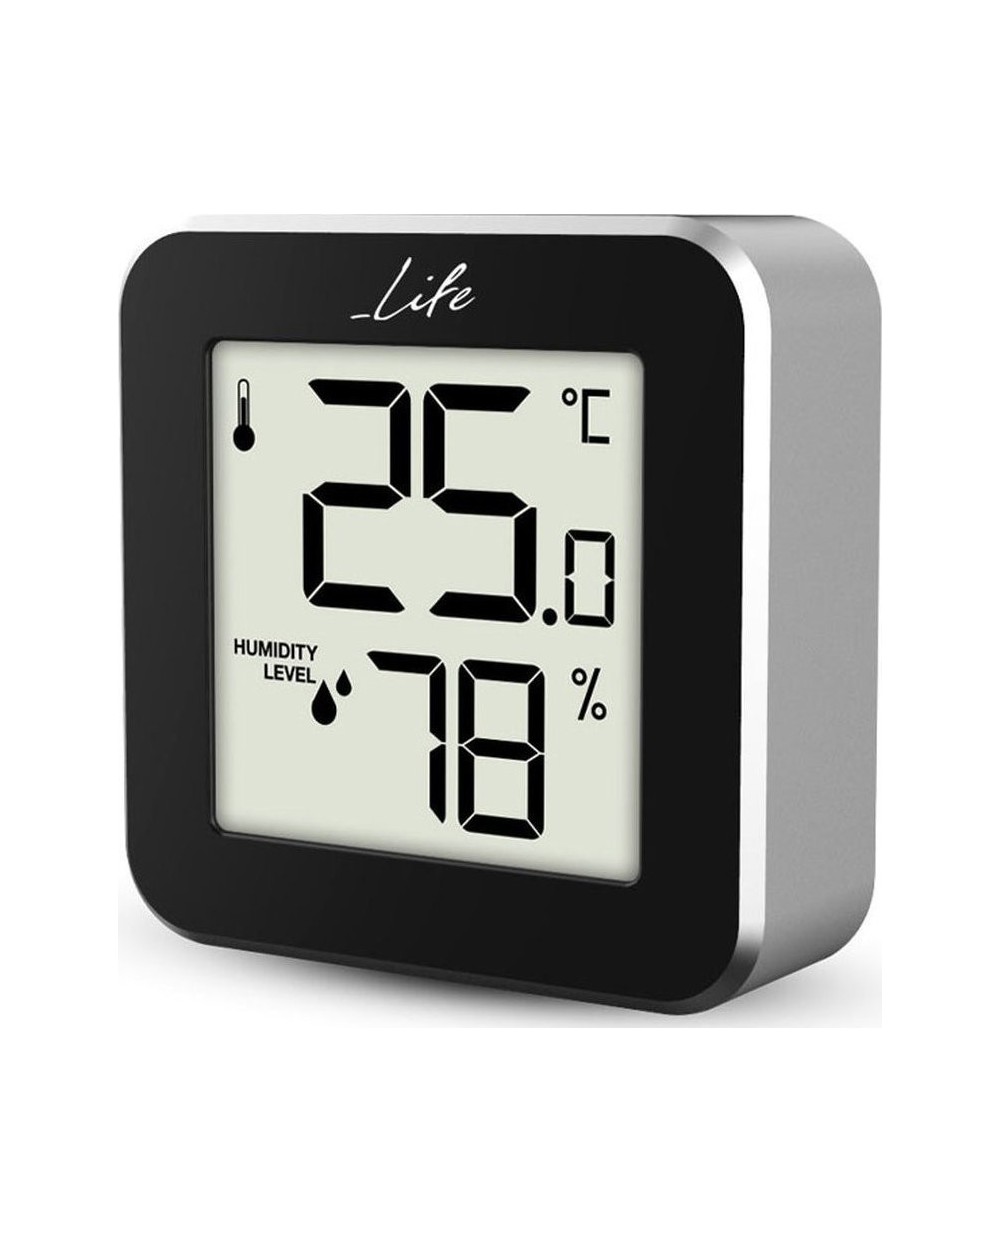 Ψηφιακό θερμόμετρο και υγρόμετρο, μαύρο με πλαίσιο αλουμινίου LIFE Alu Mini